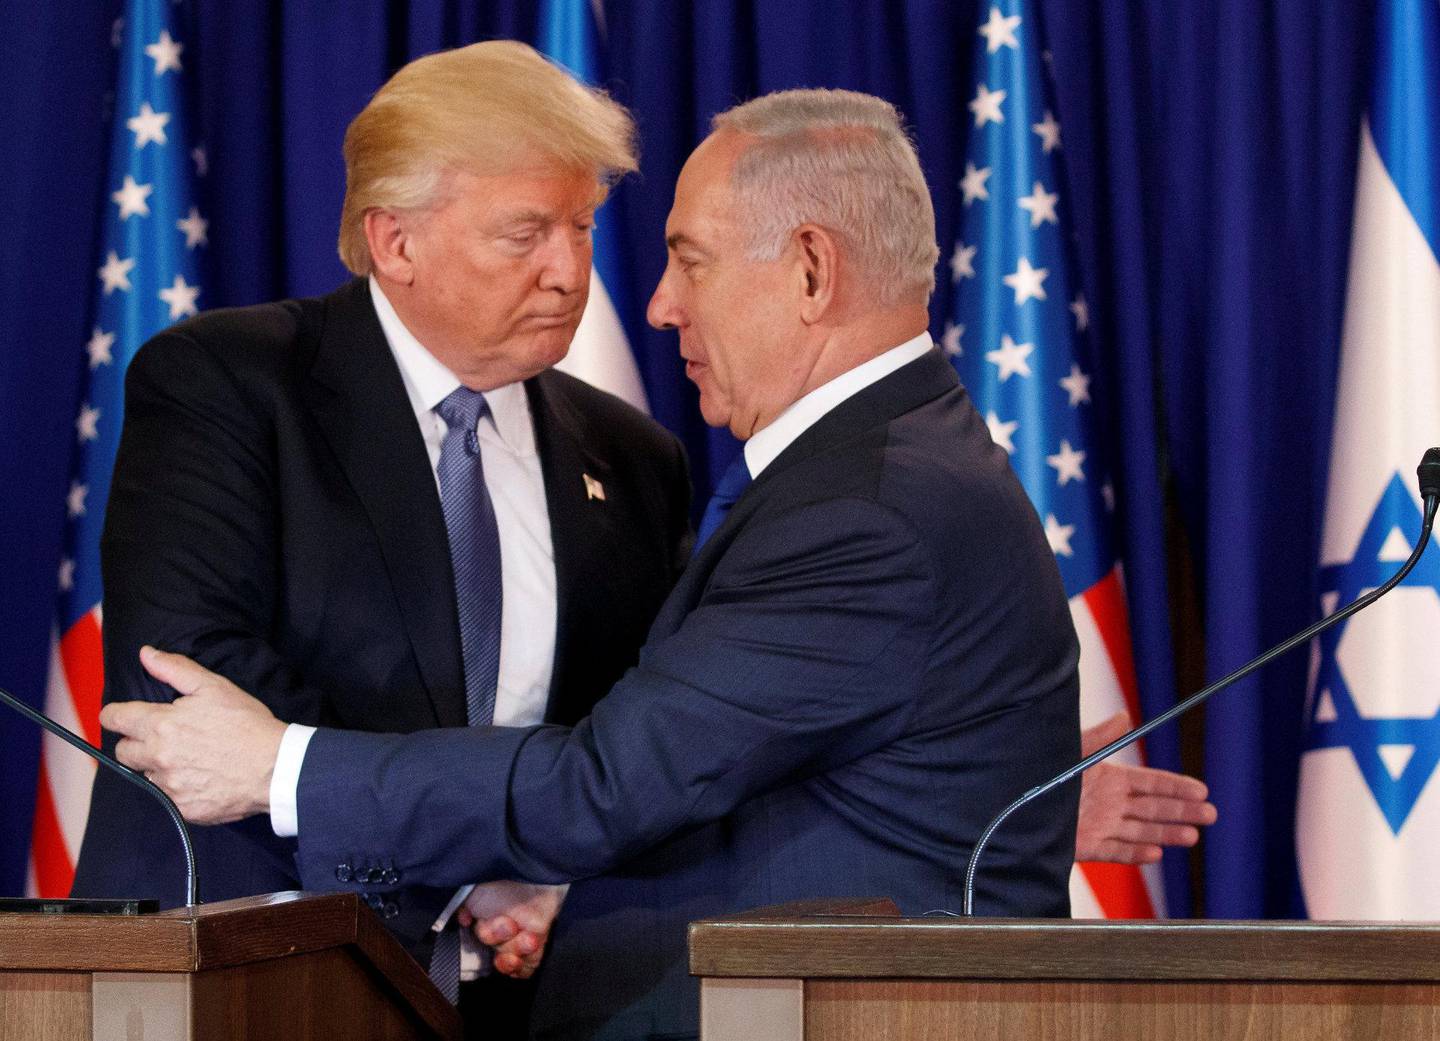 HJELP: Israels statsminister Benjamin Netanyahu har fått hjelp av president Donald Trump. FOTO: NTB SCANPIX